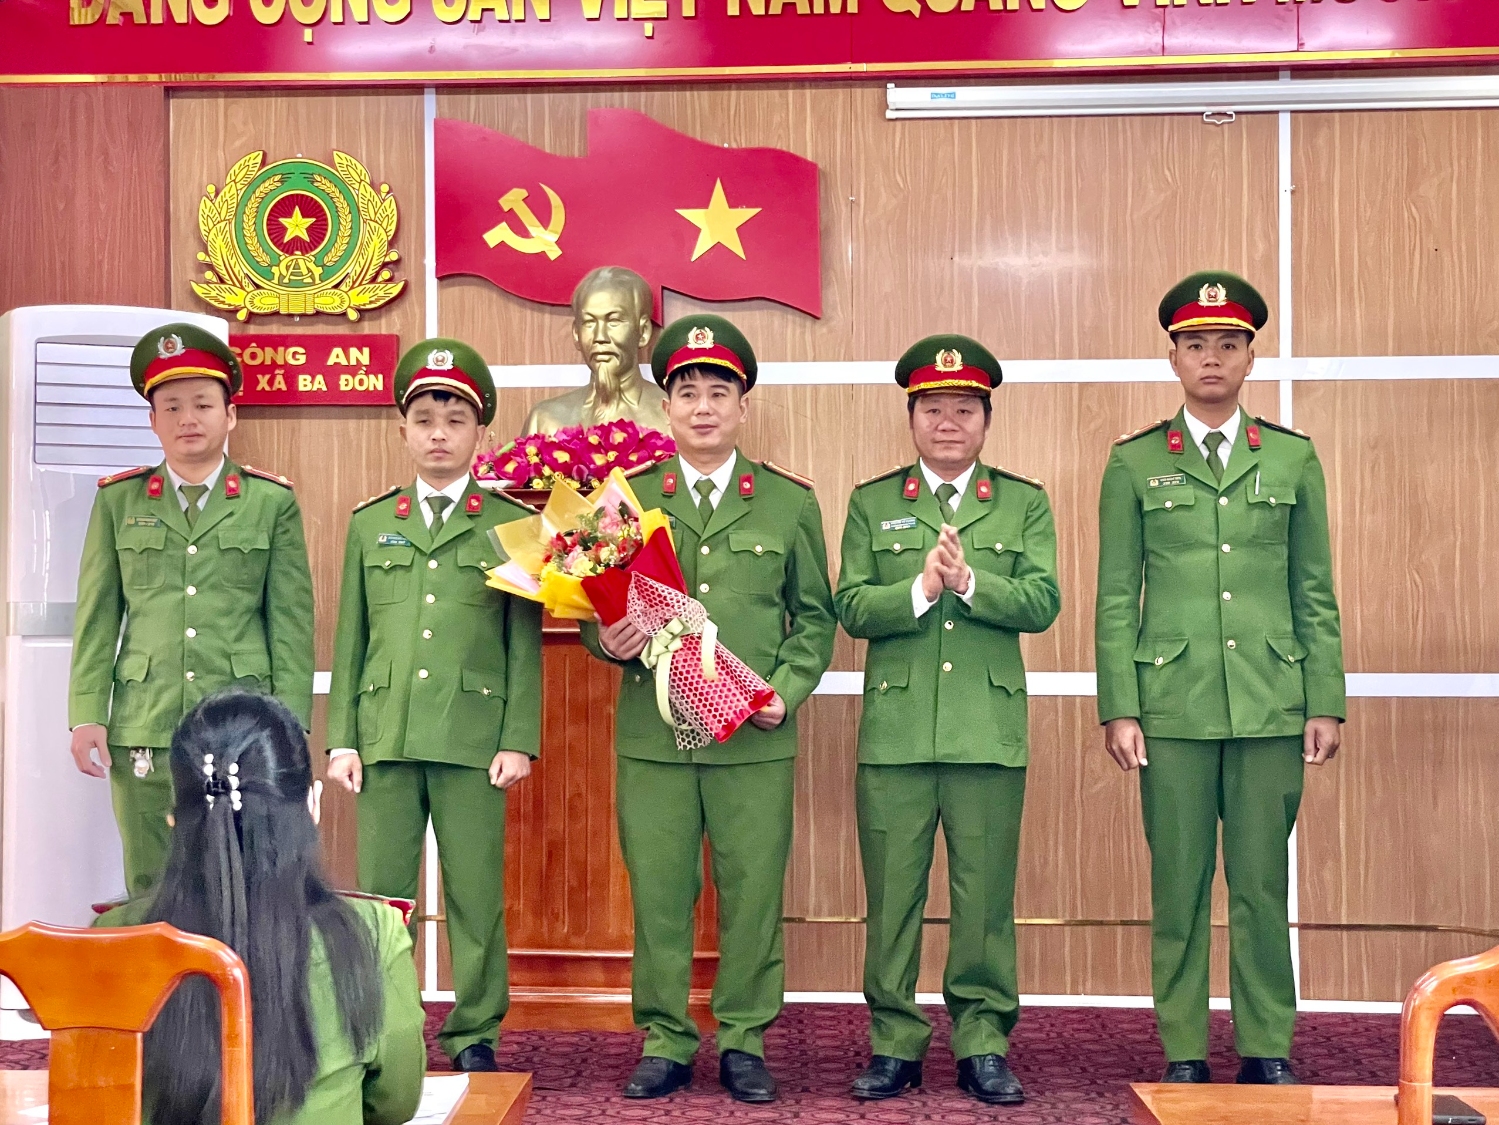 Đồng chí Thượng tá Nguyễn Vũ Cương – Trưởng Công an thị xã đã chúc mừng Đội Kỹ thuật hình sự.